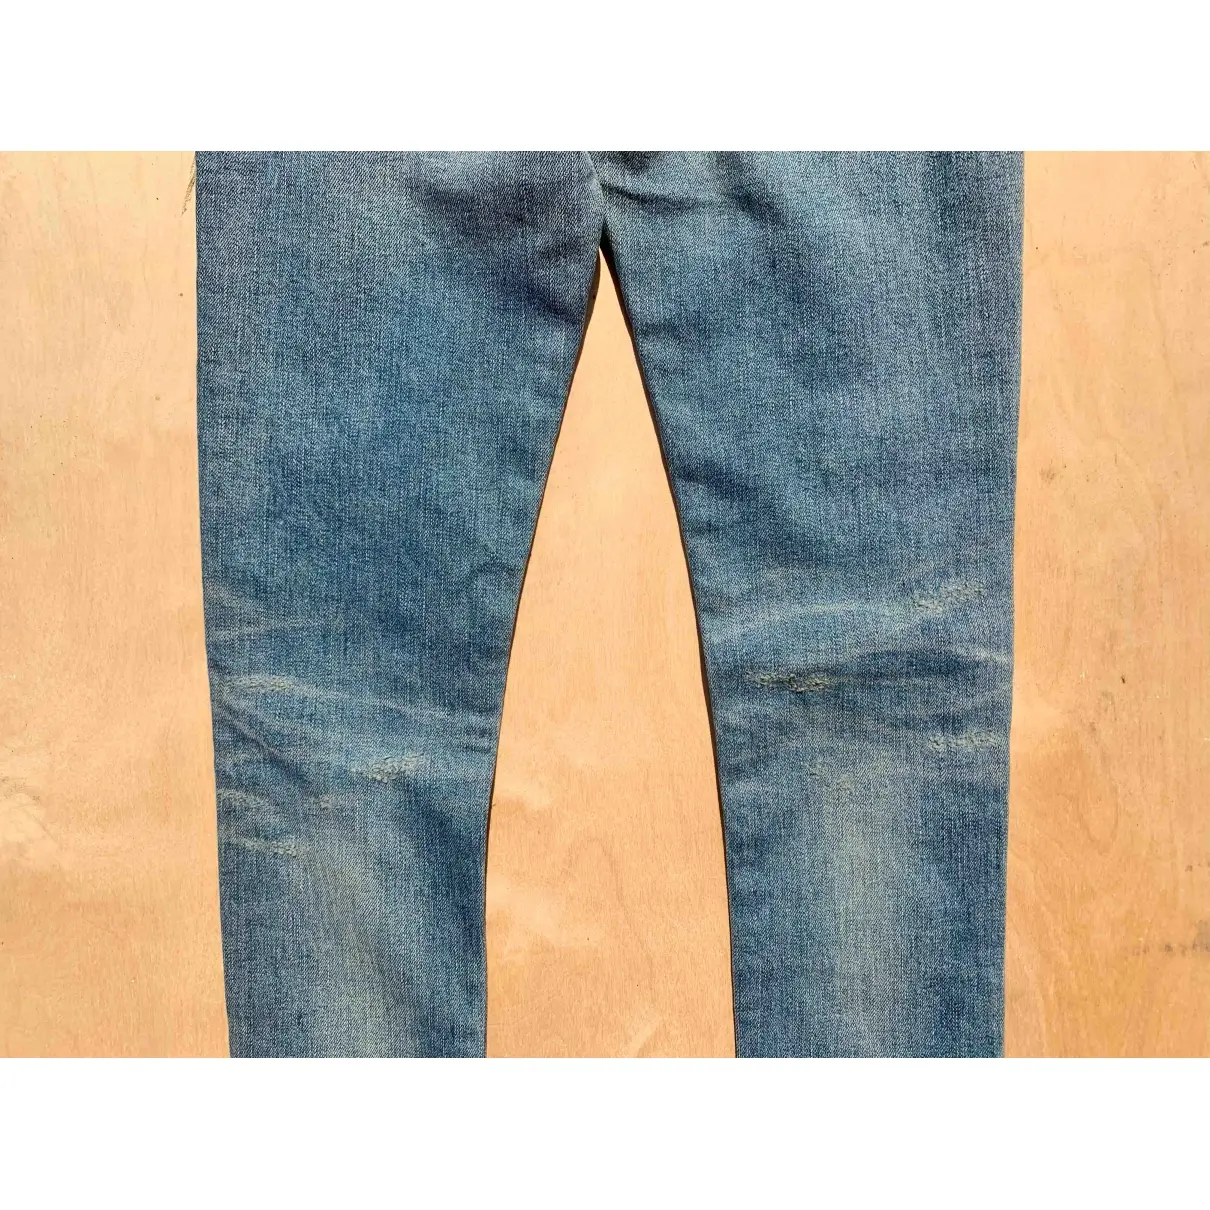 Saint Laurent Slim jeans for sale